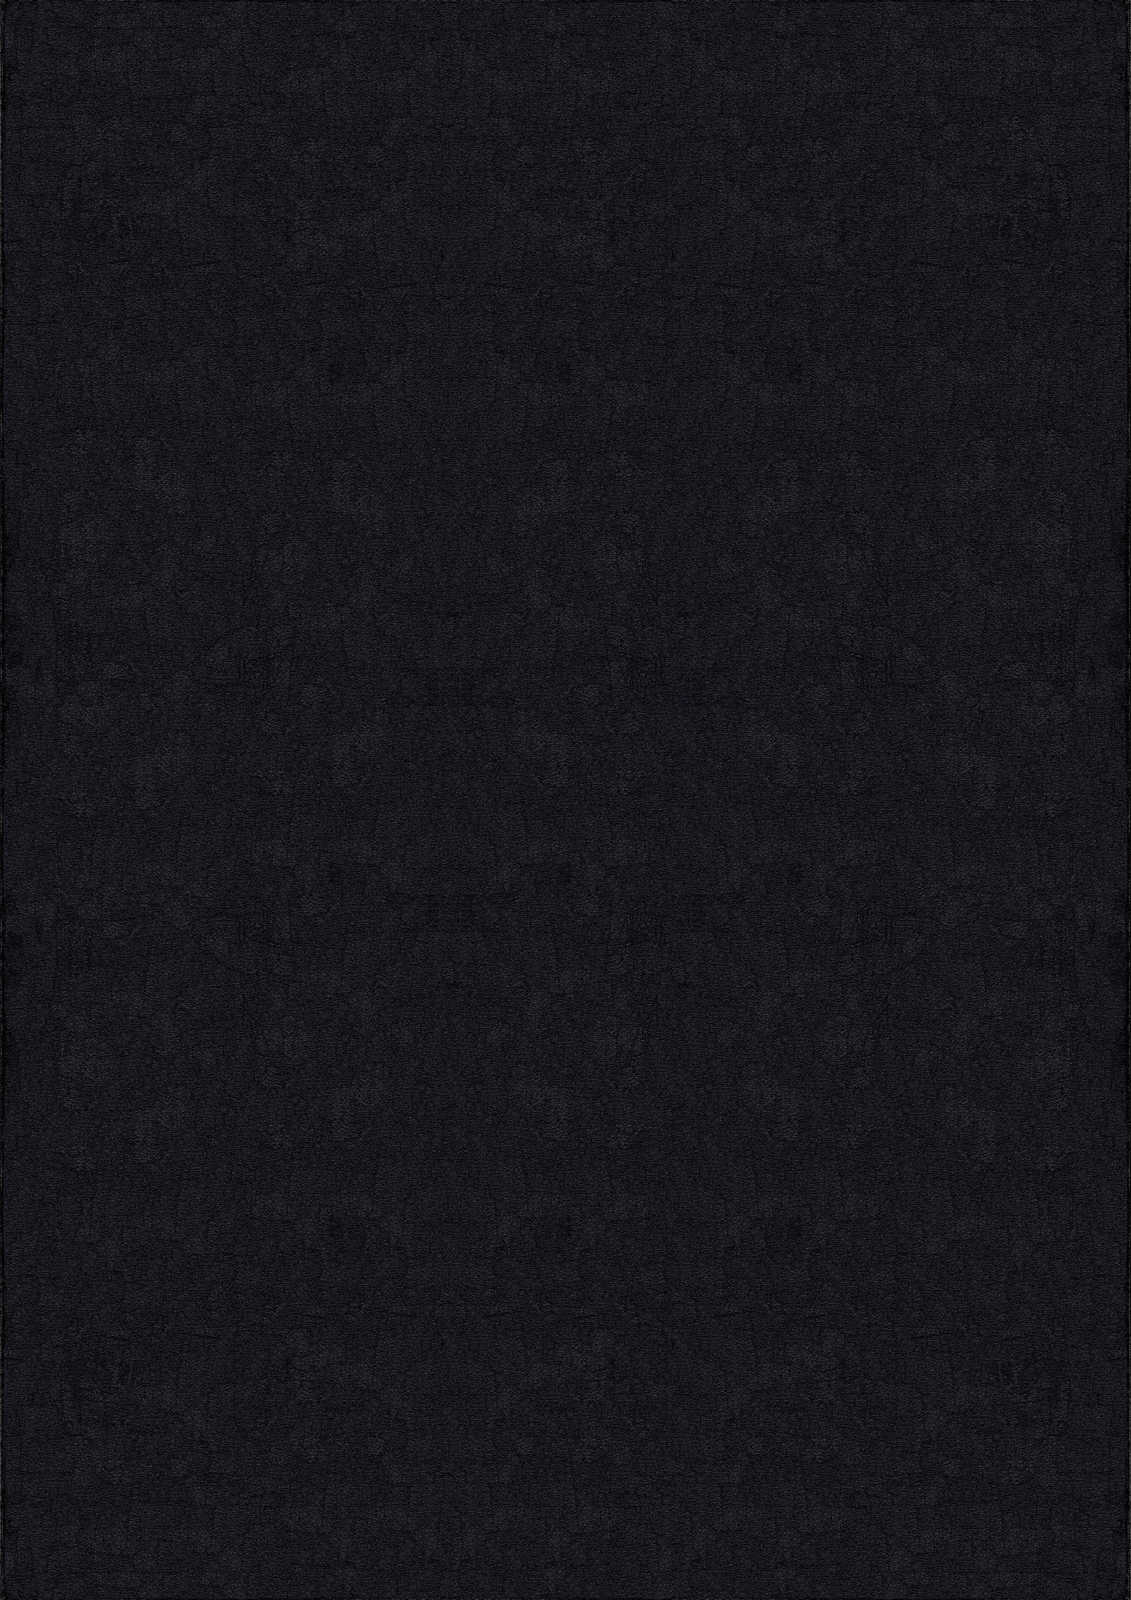             Fluweelzacht hoogpolig tapijt in zwart - 200 x 140 cm
        